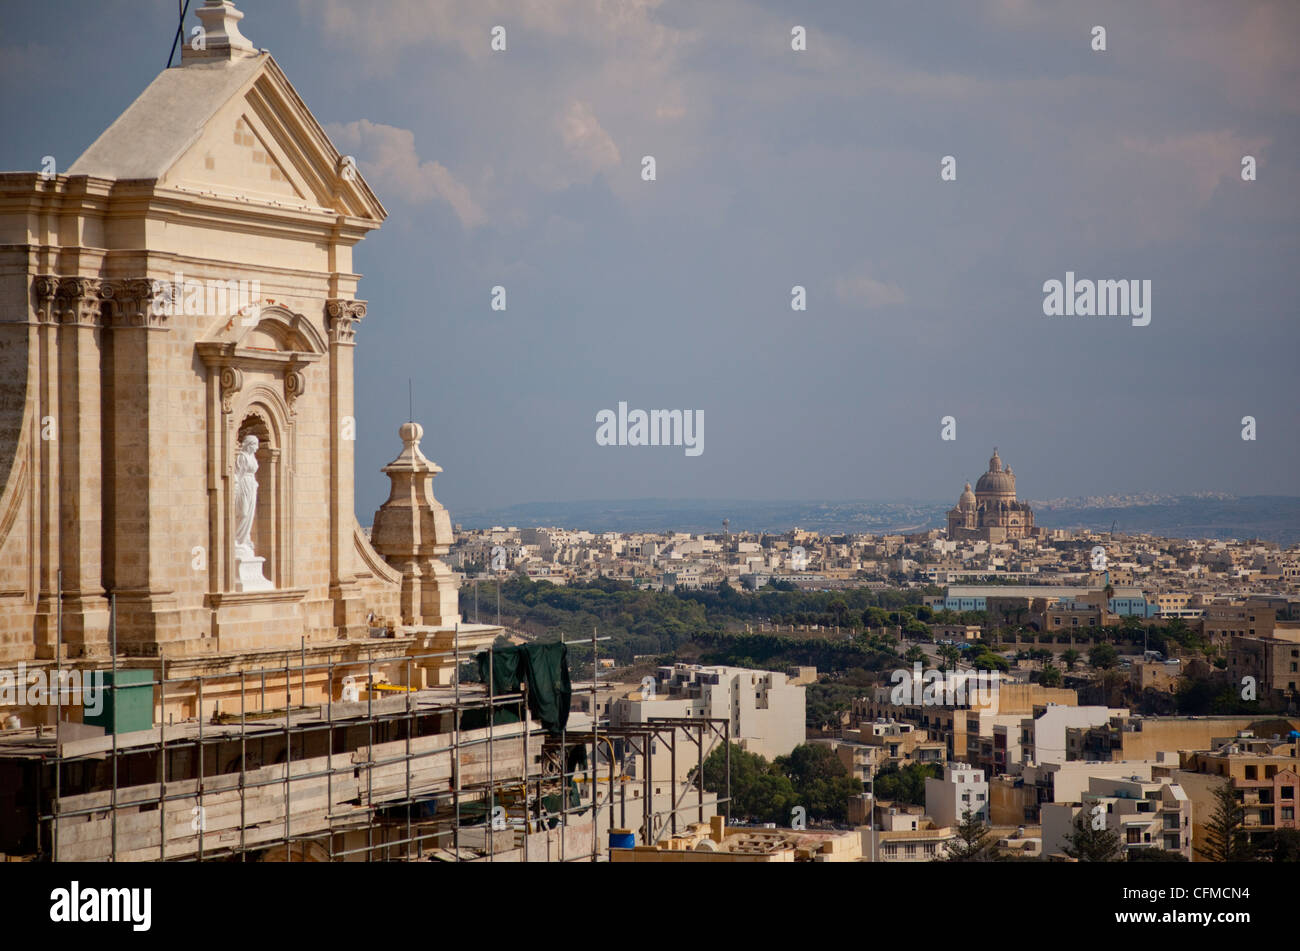 La Cathédrale de Gozo et Xewkija Dome de la Citadelle, Rabat (Victoria), Gozo, Malte, Méditerranée, Europe Banque D'Images